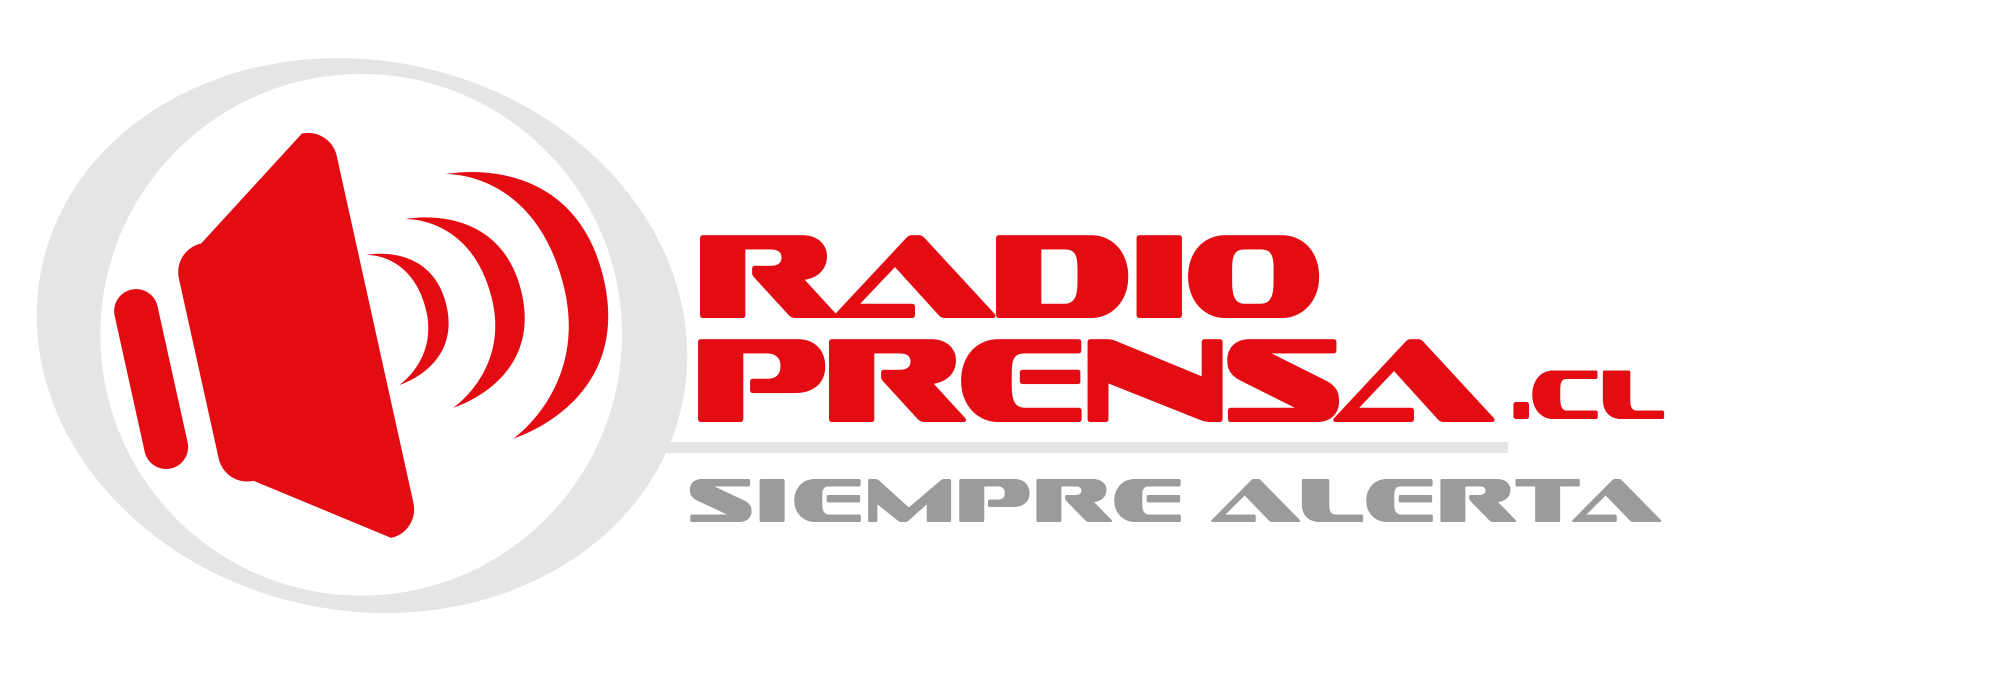 Radioprensa – Siempre Alerta!